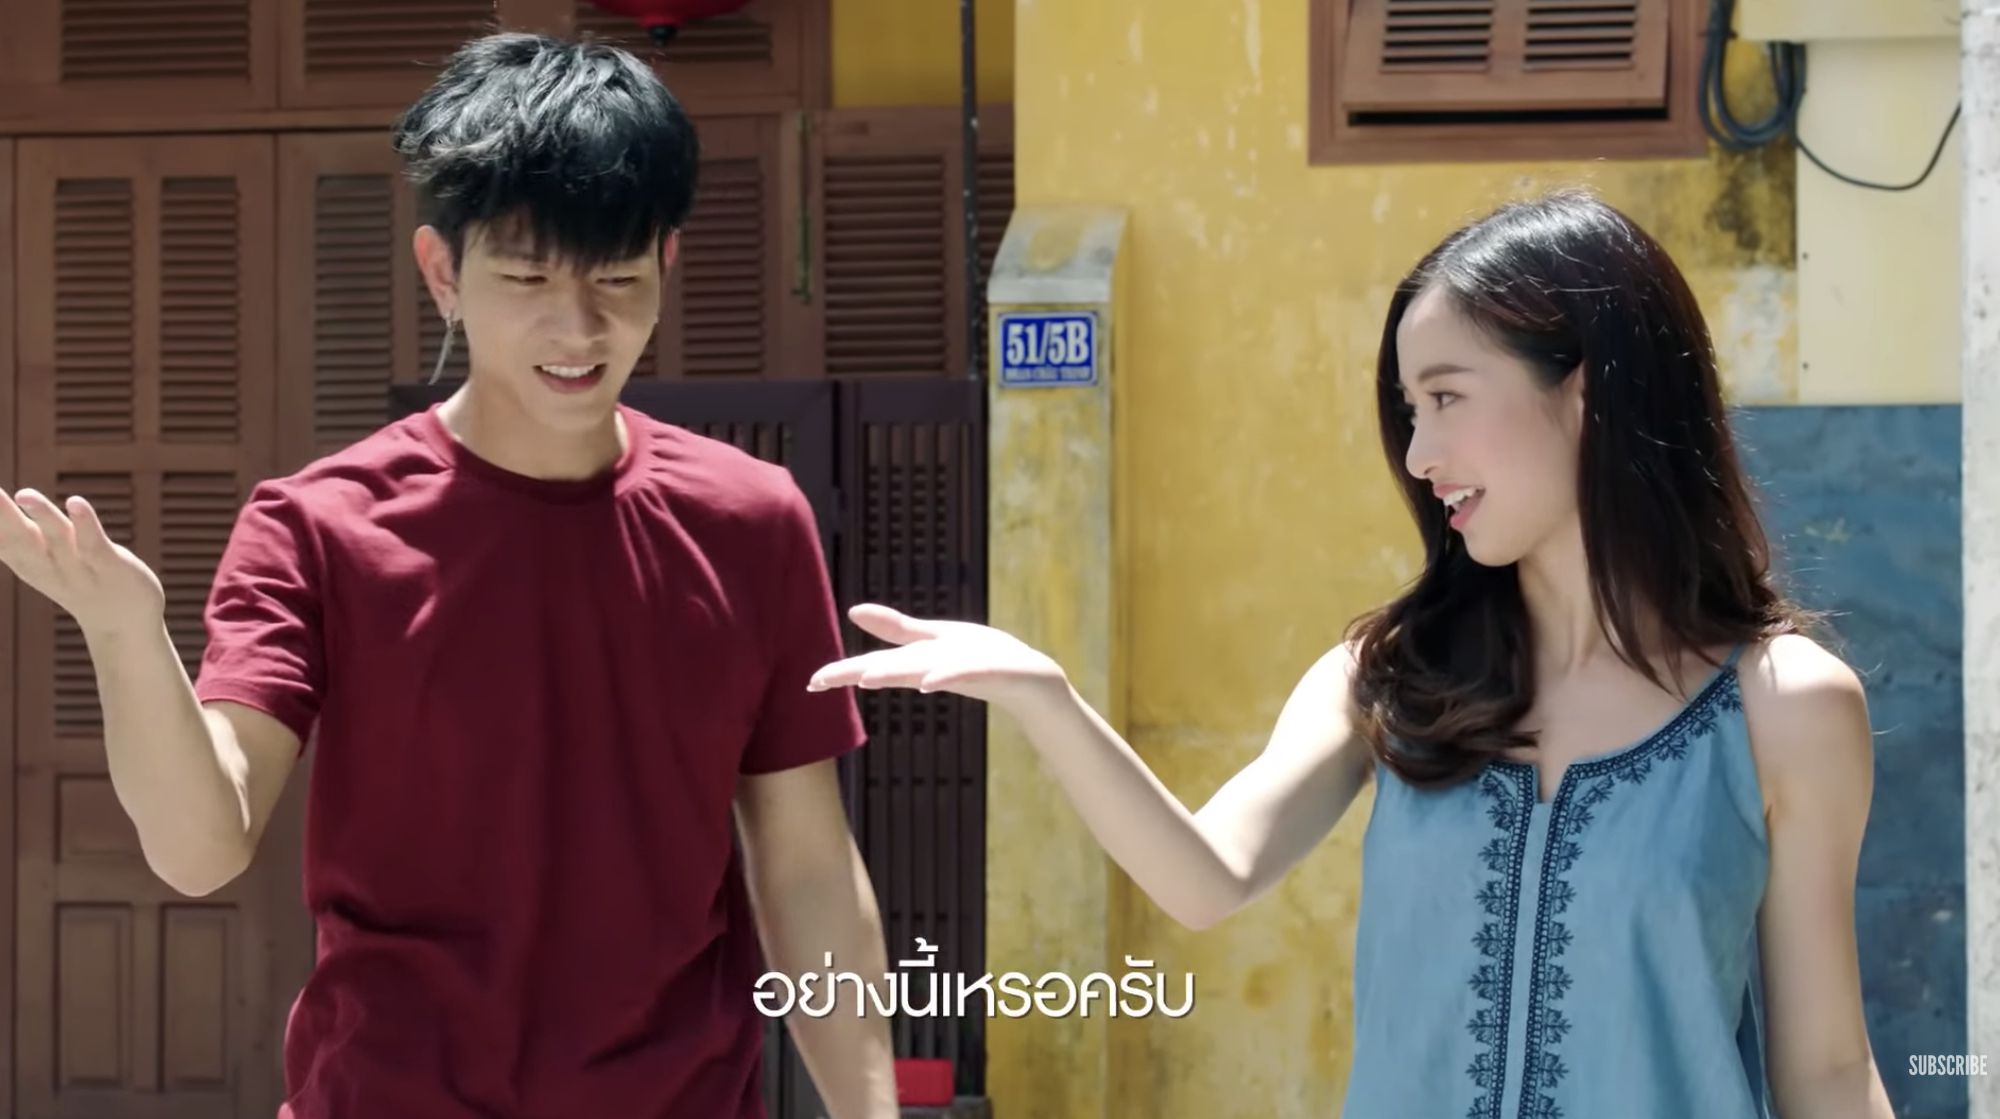 Phim Wolf (Trò Chơi Săn Người) Thái Lan hút khán giả ngay khi lên sóng (9)